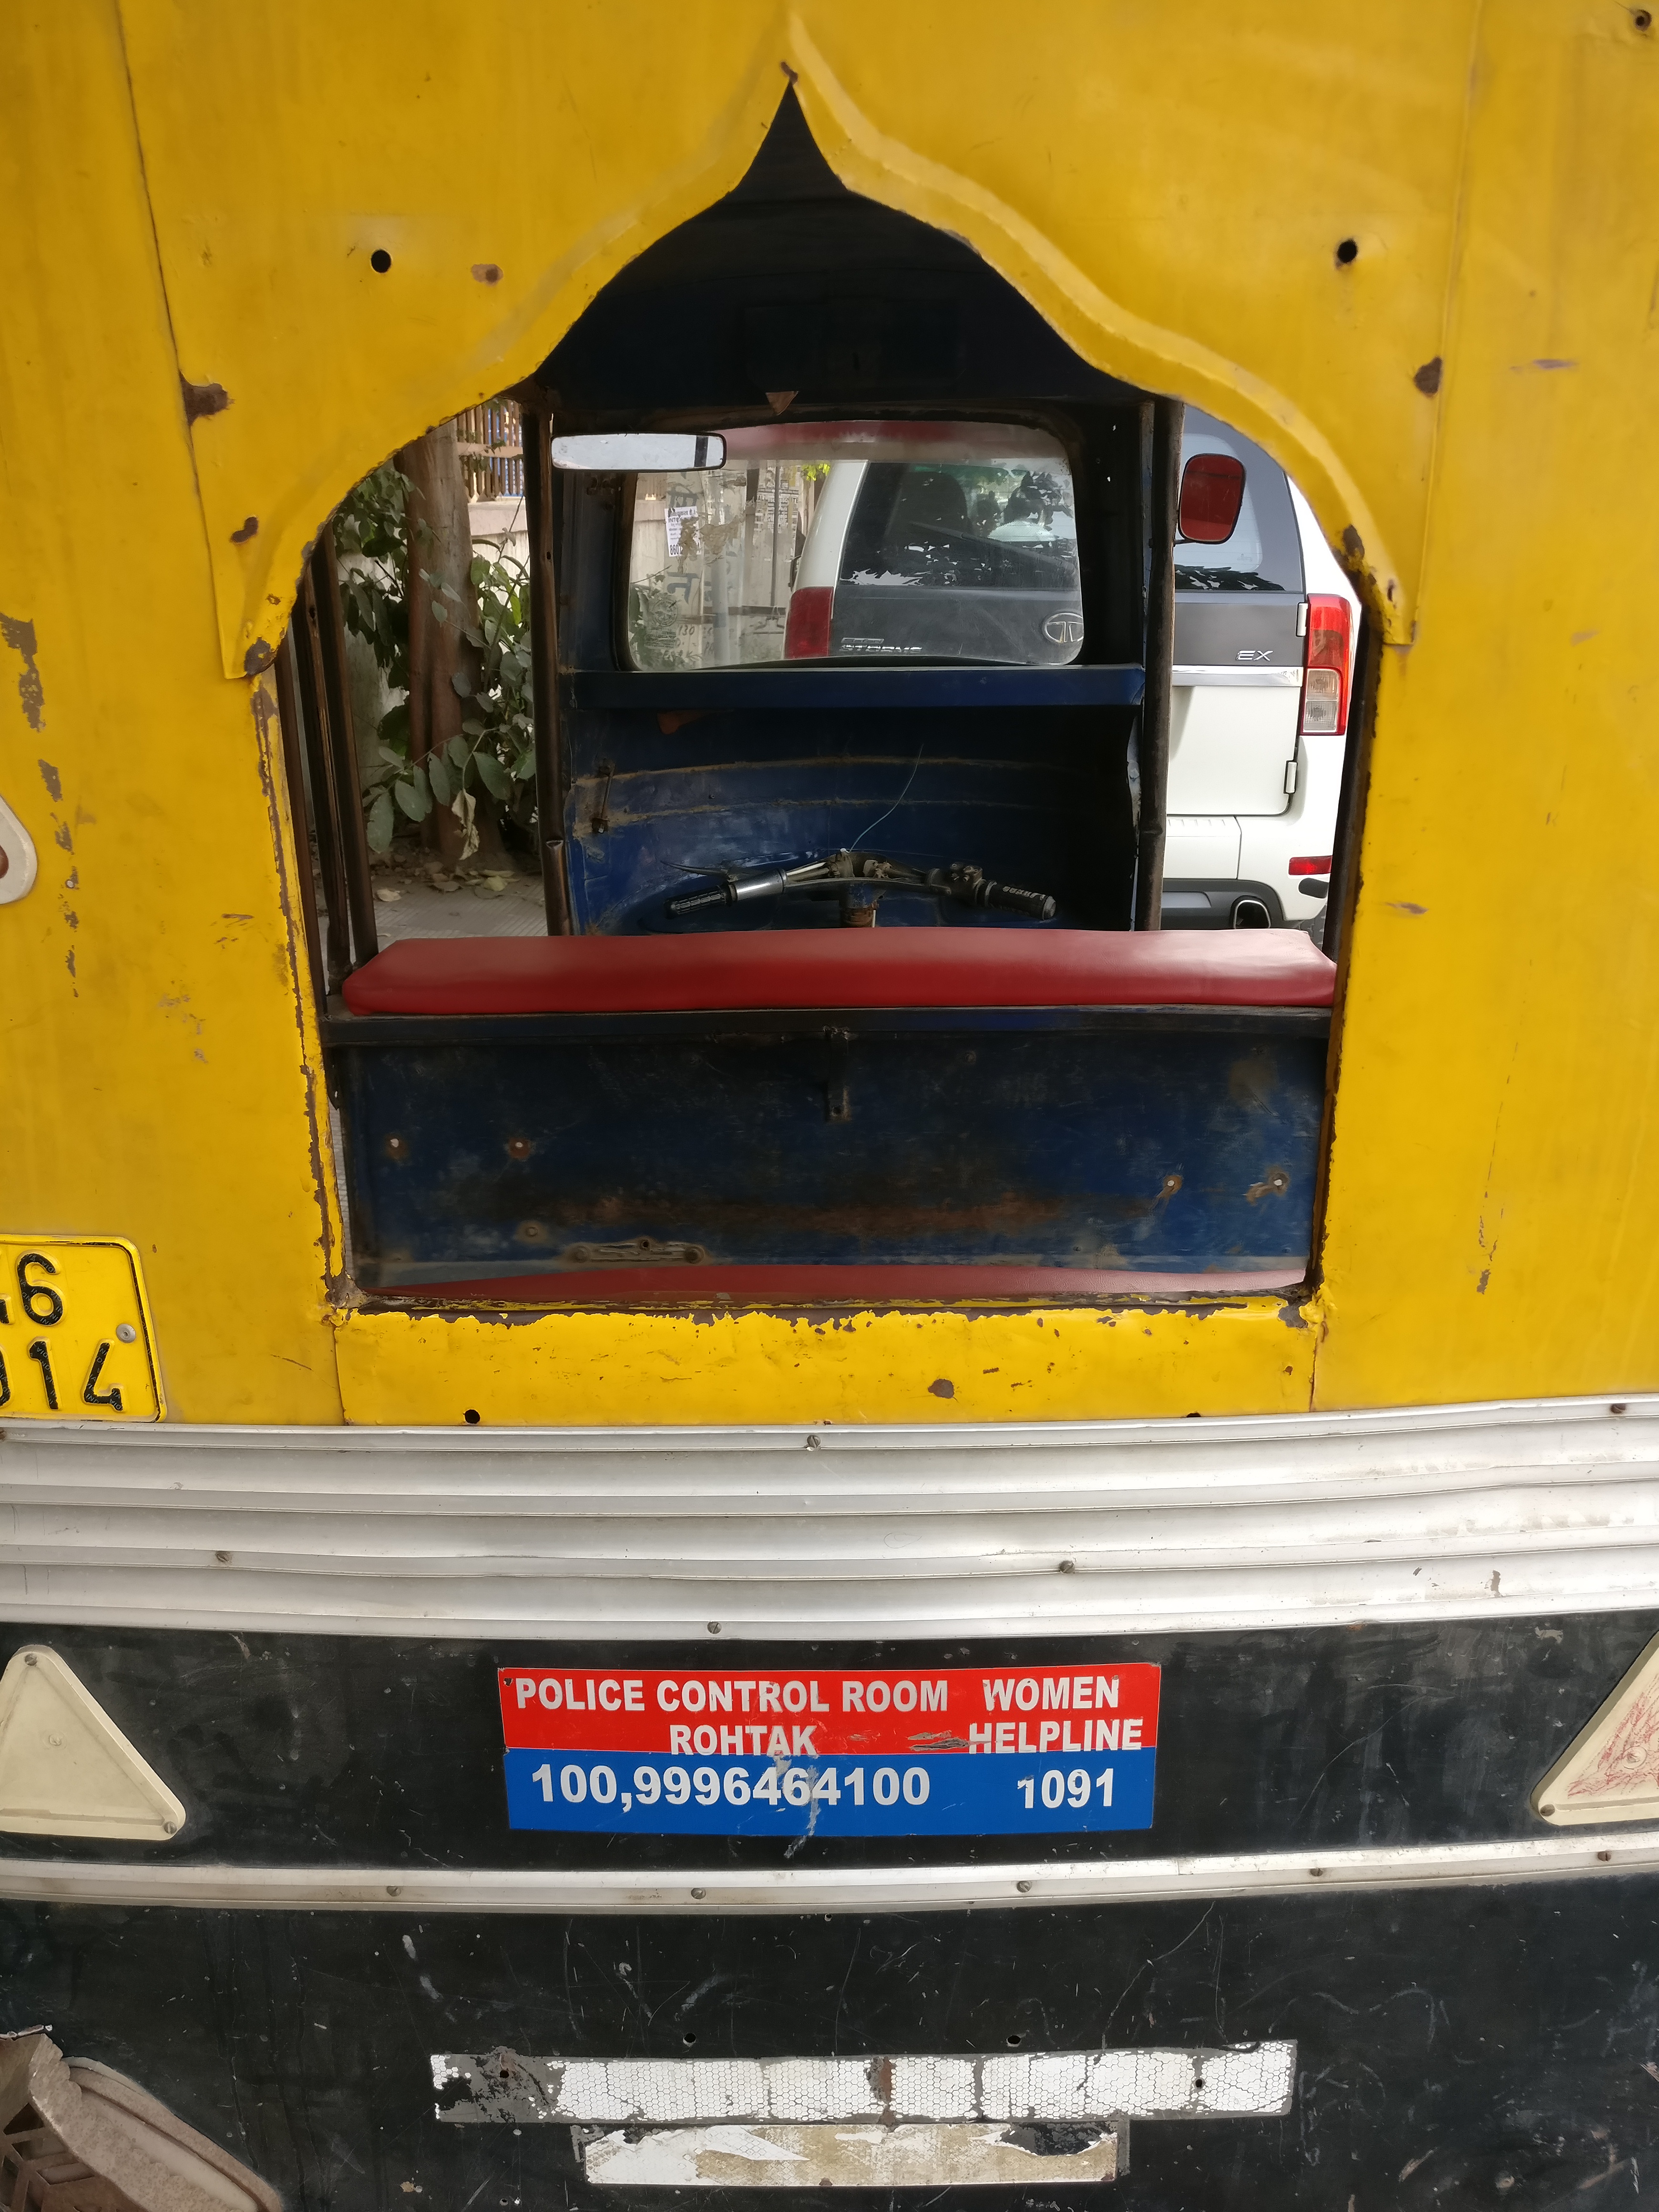 1090 helpline display on autorickshaw